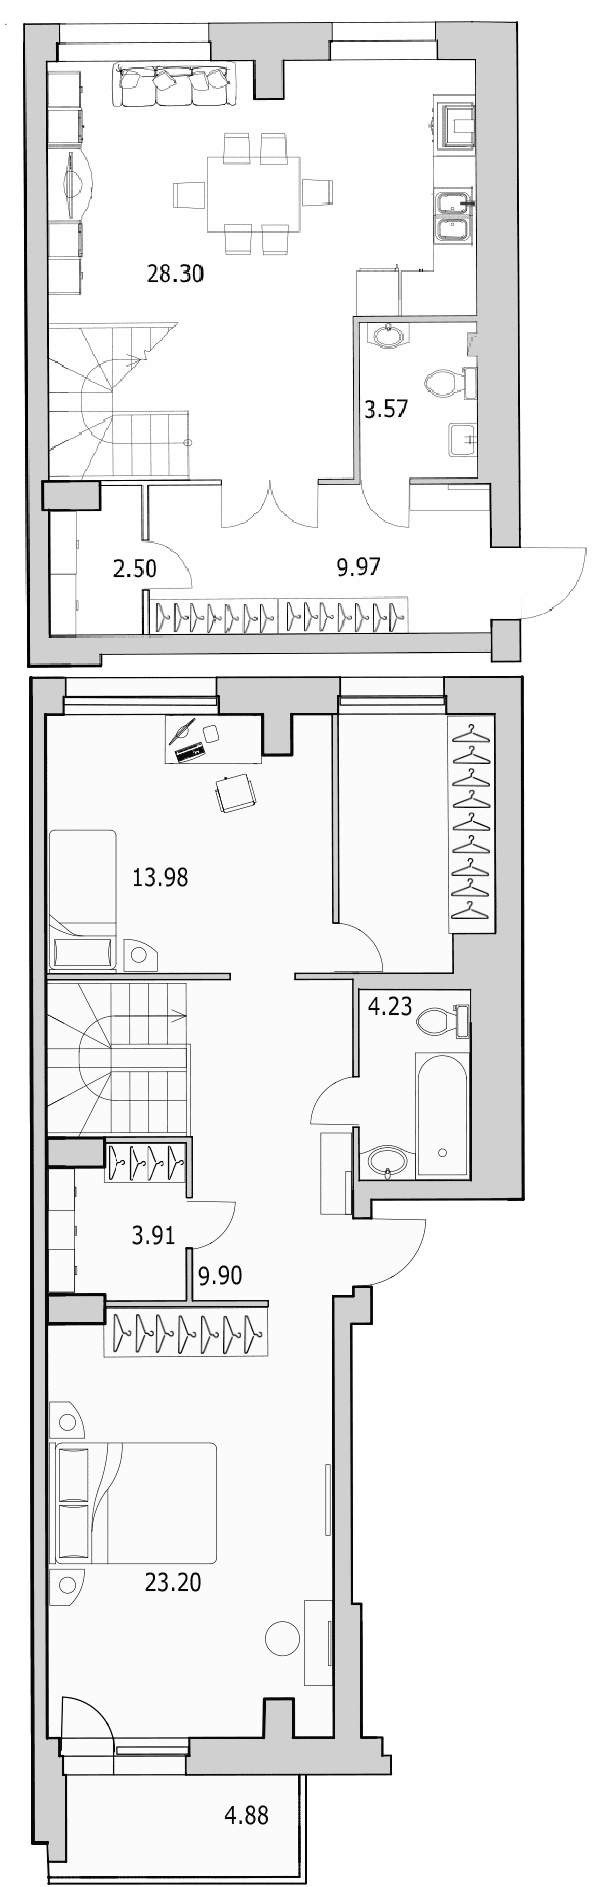 Продажа 3-комнатной (Евро) квартиры 110.28 м2, 2/0 этаж, ЖК «Байрон» - план-схема